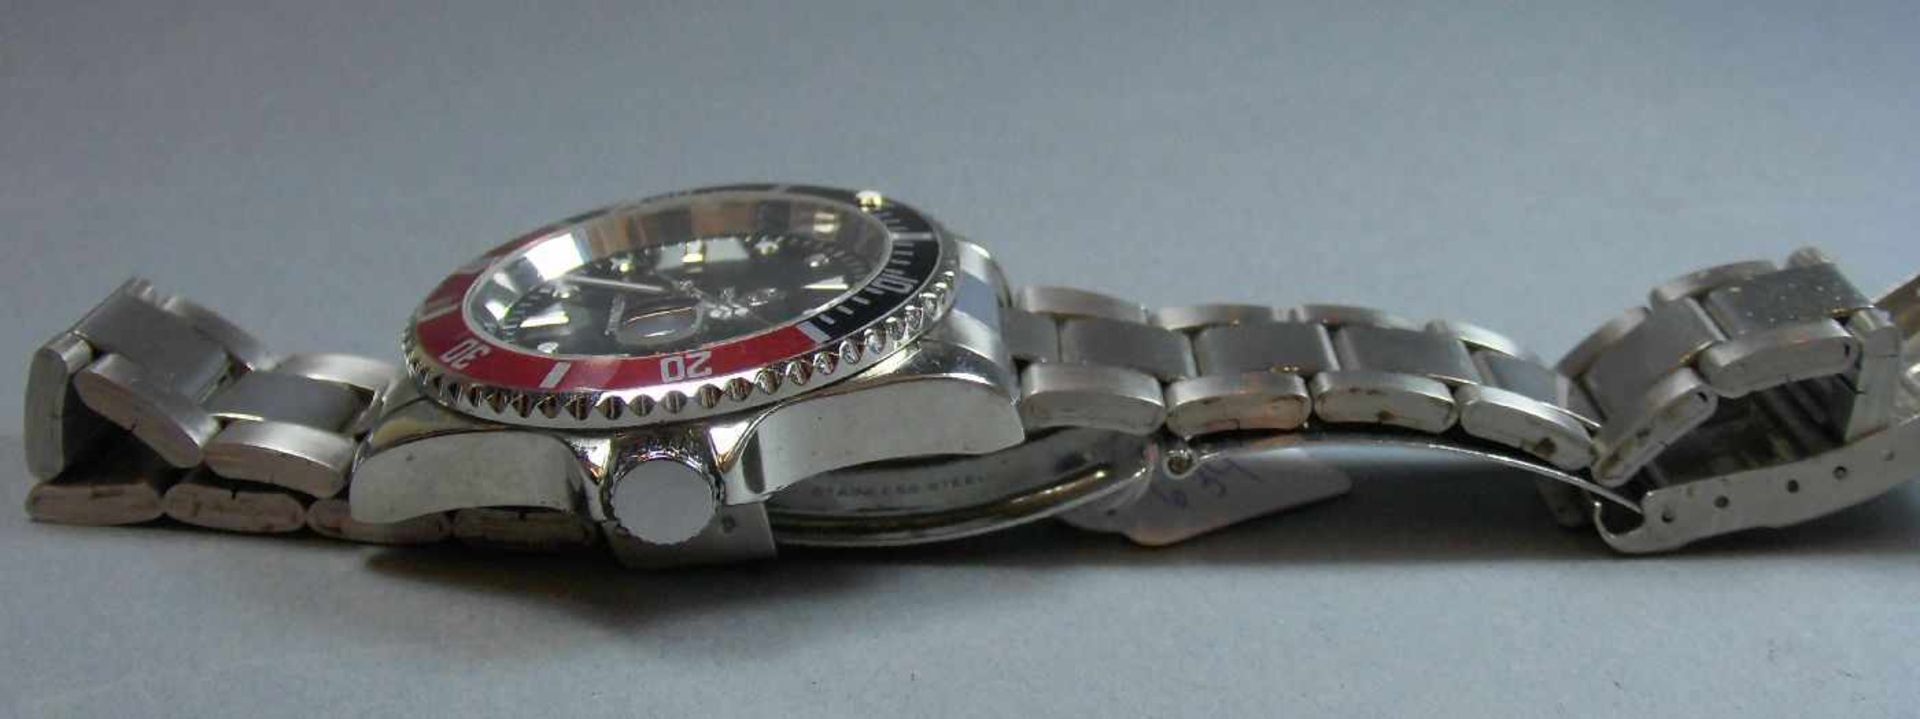 ARMBANDUHR : SEWOR / wristwatch, Automatik- Uhr. Rundes Stahlgehäuse mit Gliederarmband und - Bild 4 aus 6